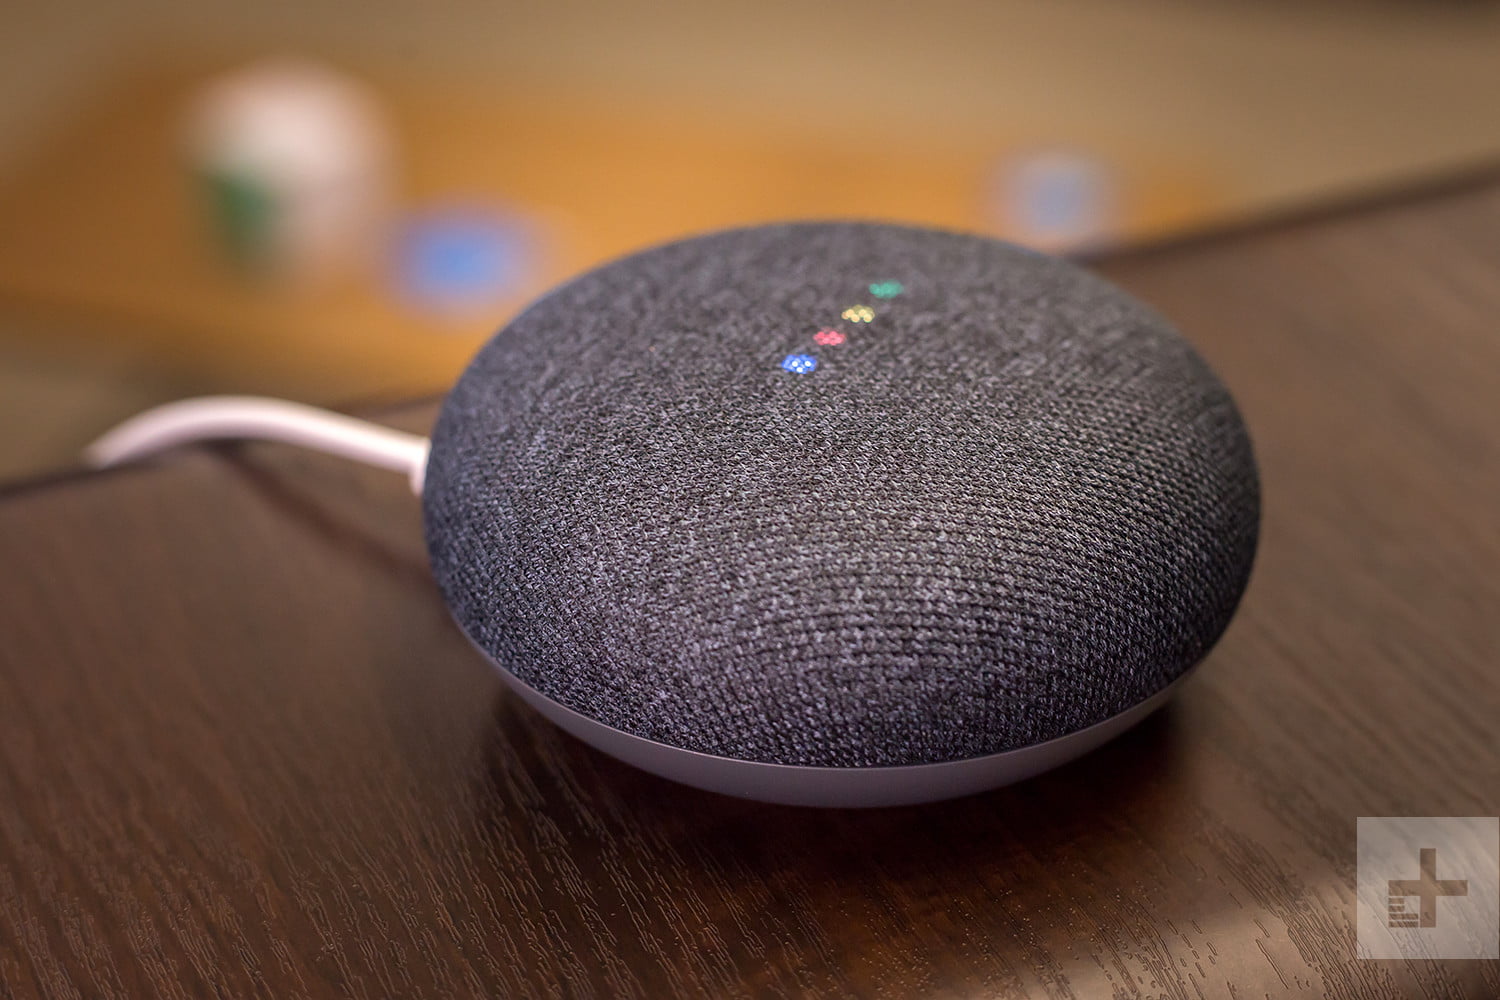 Google Home bị bóc phốt nghe lén âm thanh xung quanh 24/7 kể cả khi không được kích hoạt - Ảnh 1.